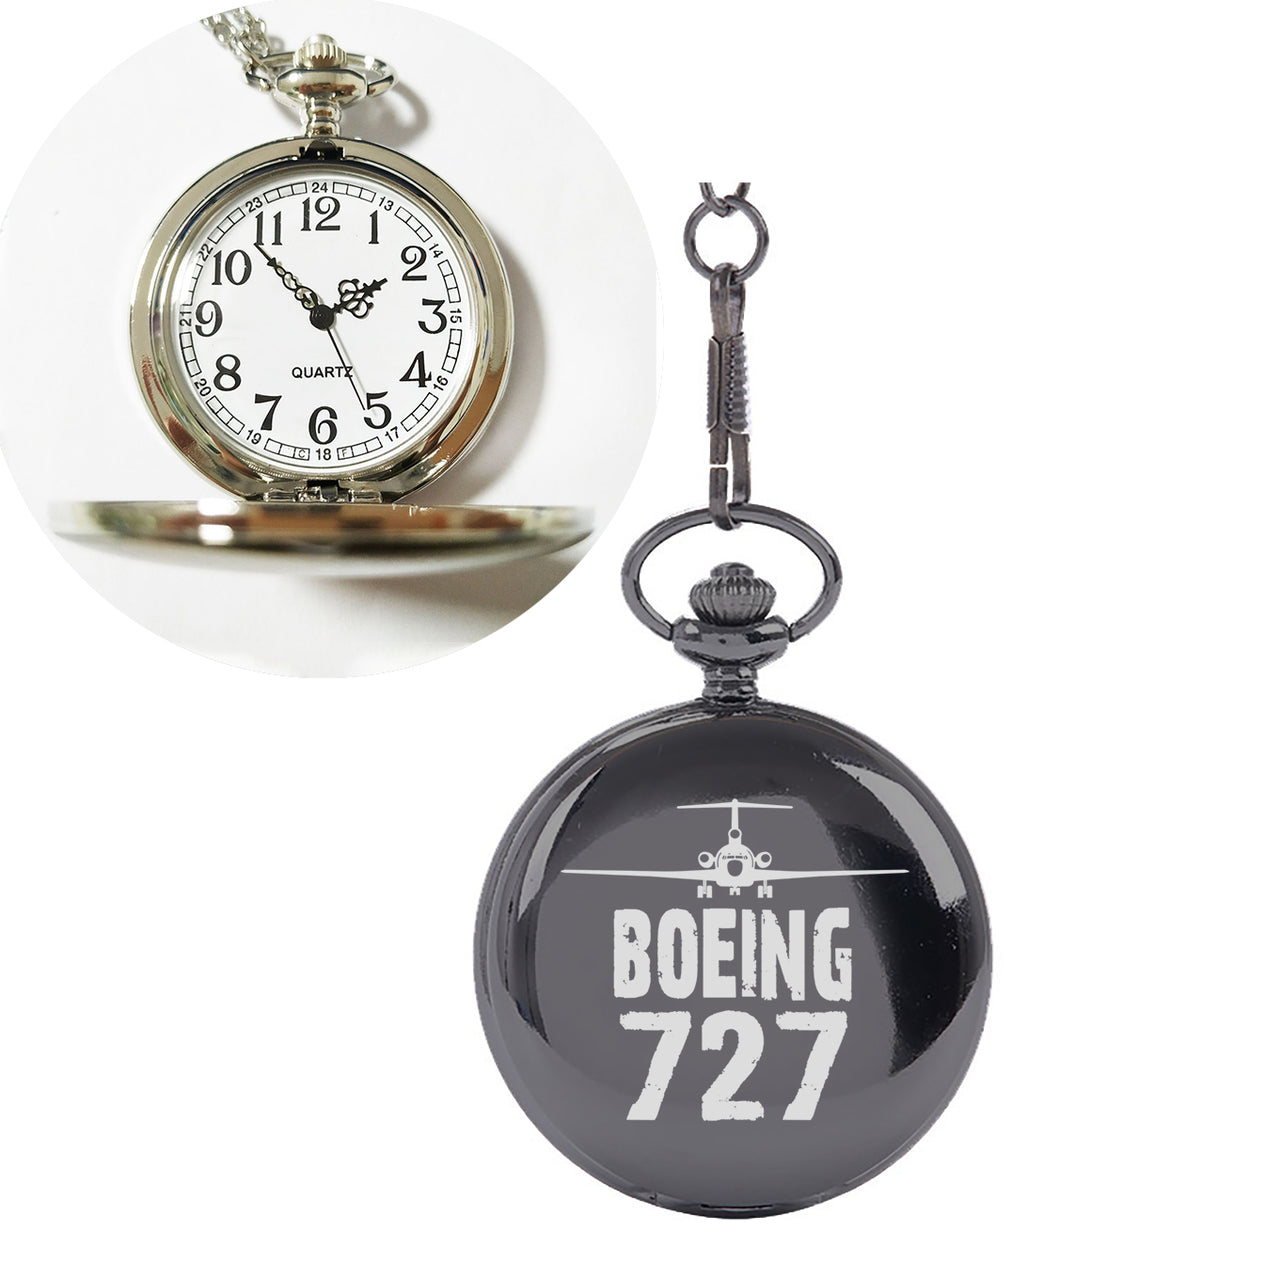 Boeing 727 & Plane Designed Pocket Watches